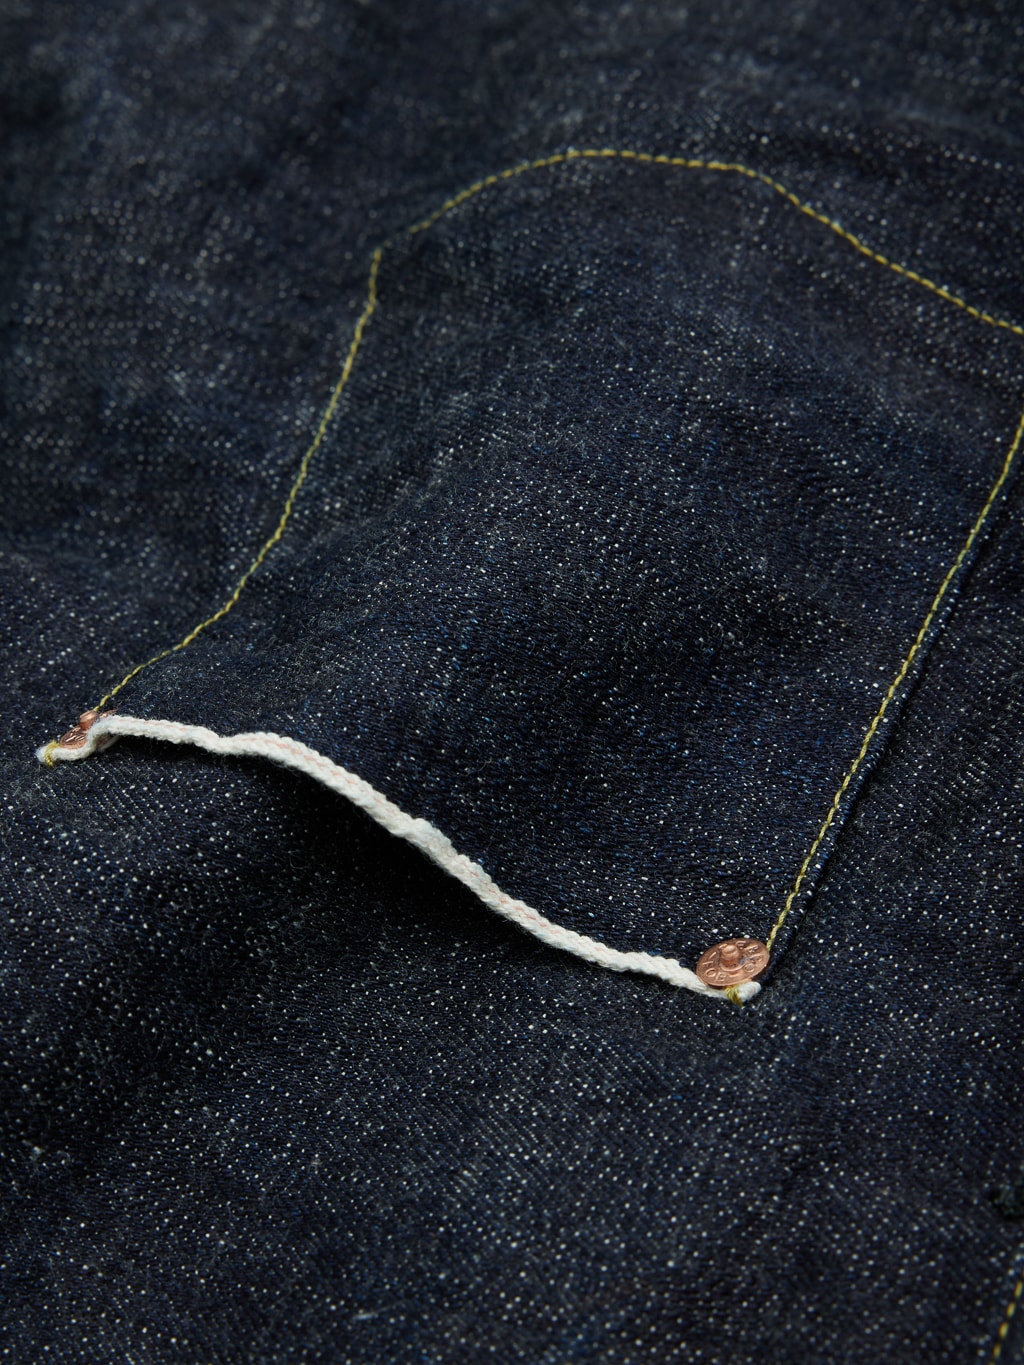 Fob factory denim pullover pocket shirt pocket artisanal detail